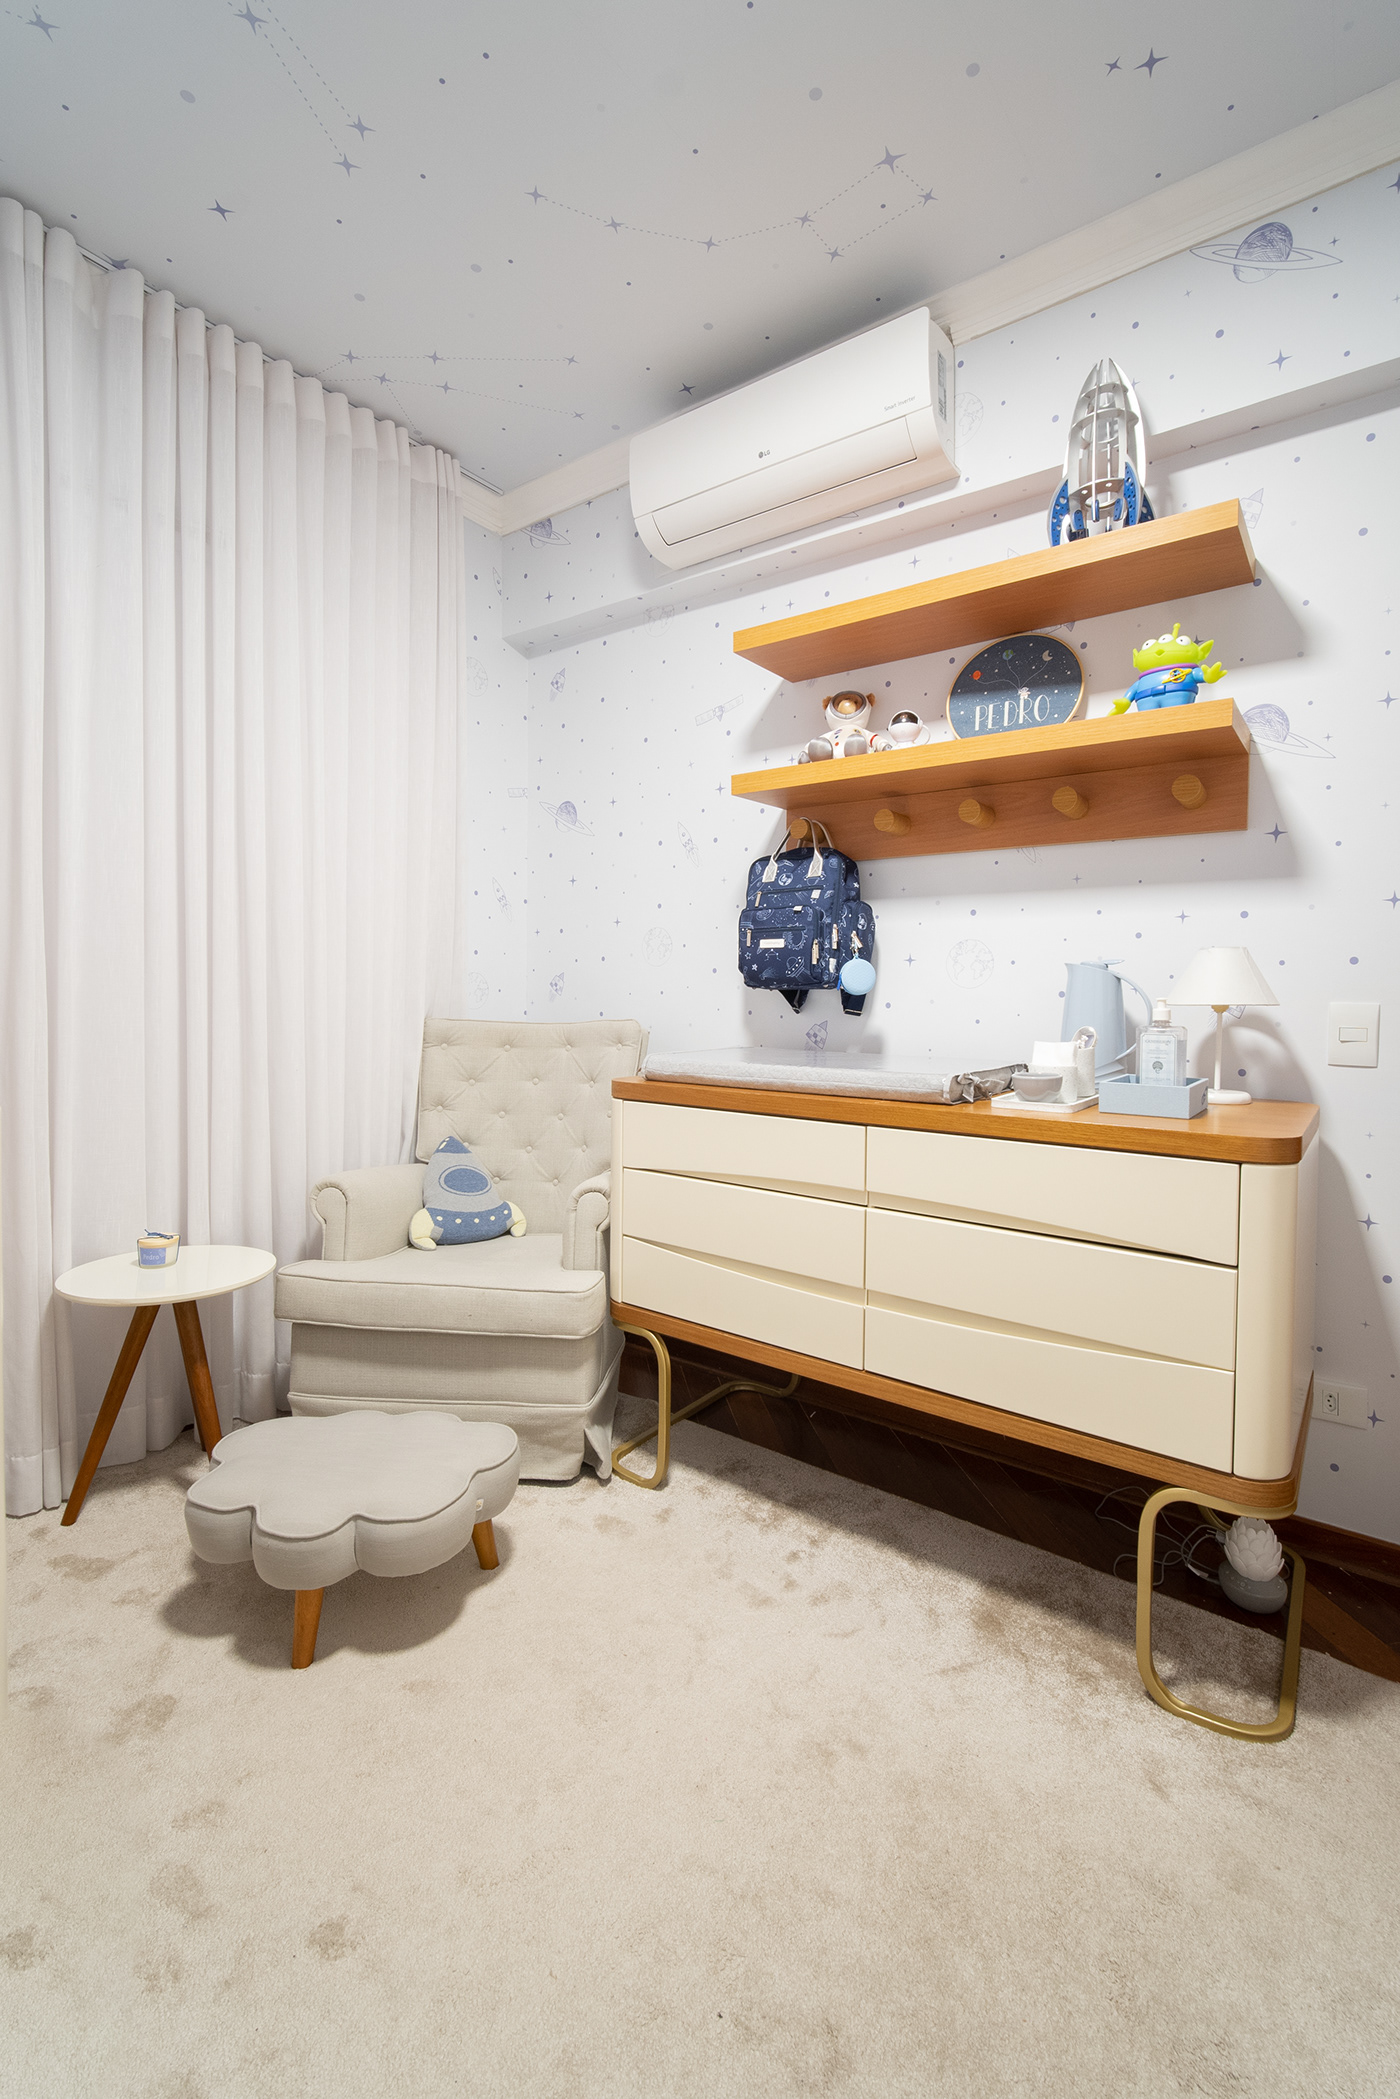 baby babyroom astronaut decor interiordesign ARQUITETURA interiores